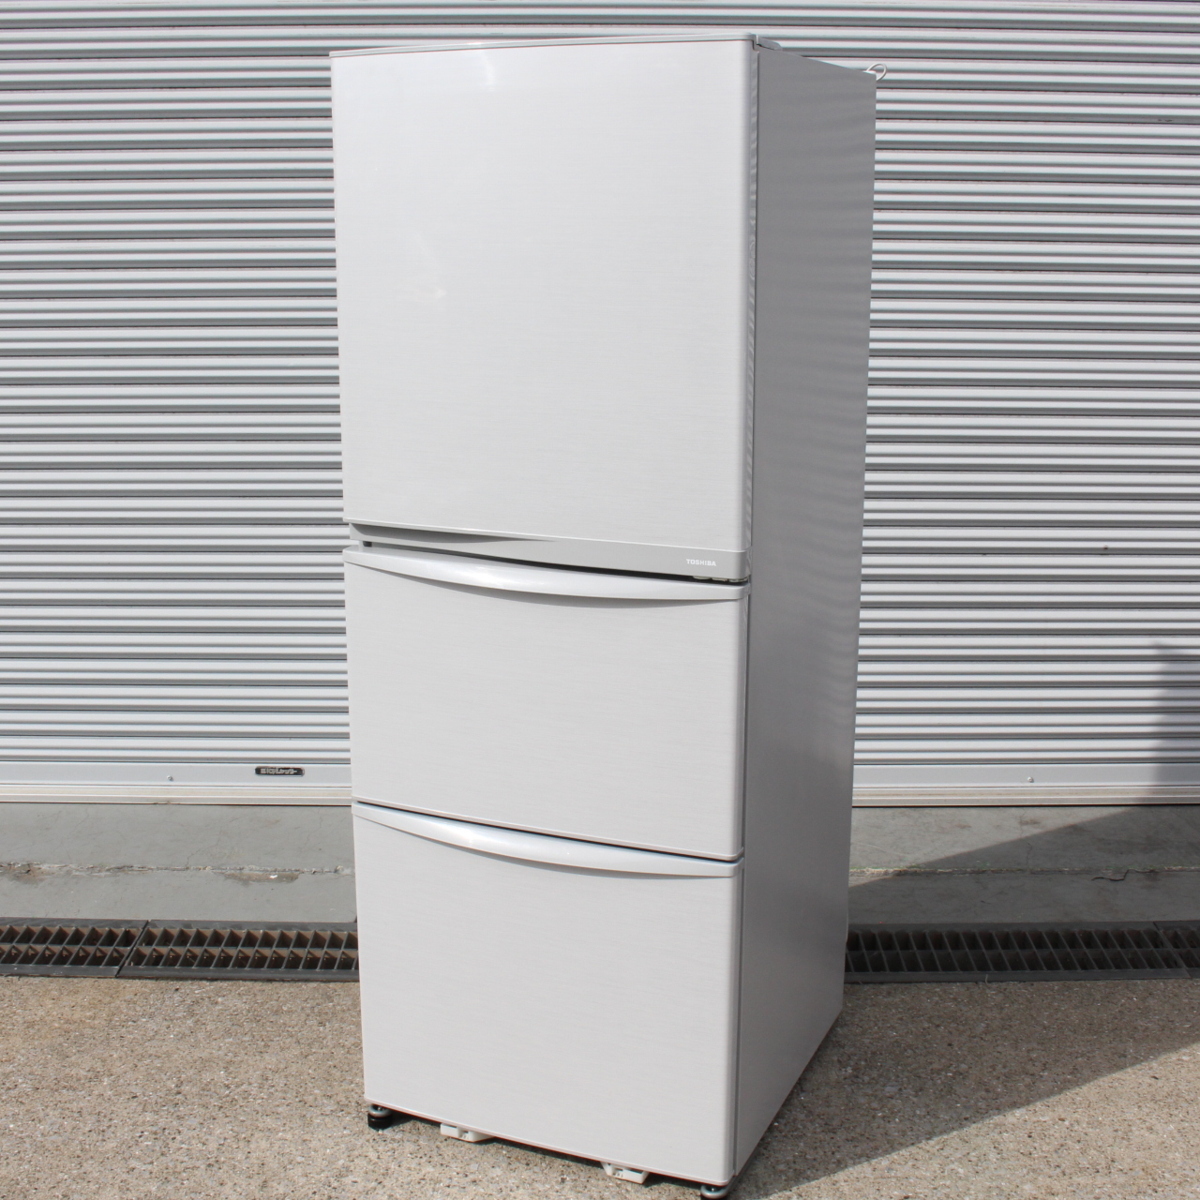 東京都渋谷区にて 東芝 ノンフロン冷凍冷蔵庫 GR-E34N 2014年製 を出張買取させて頂きました。